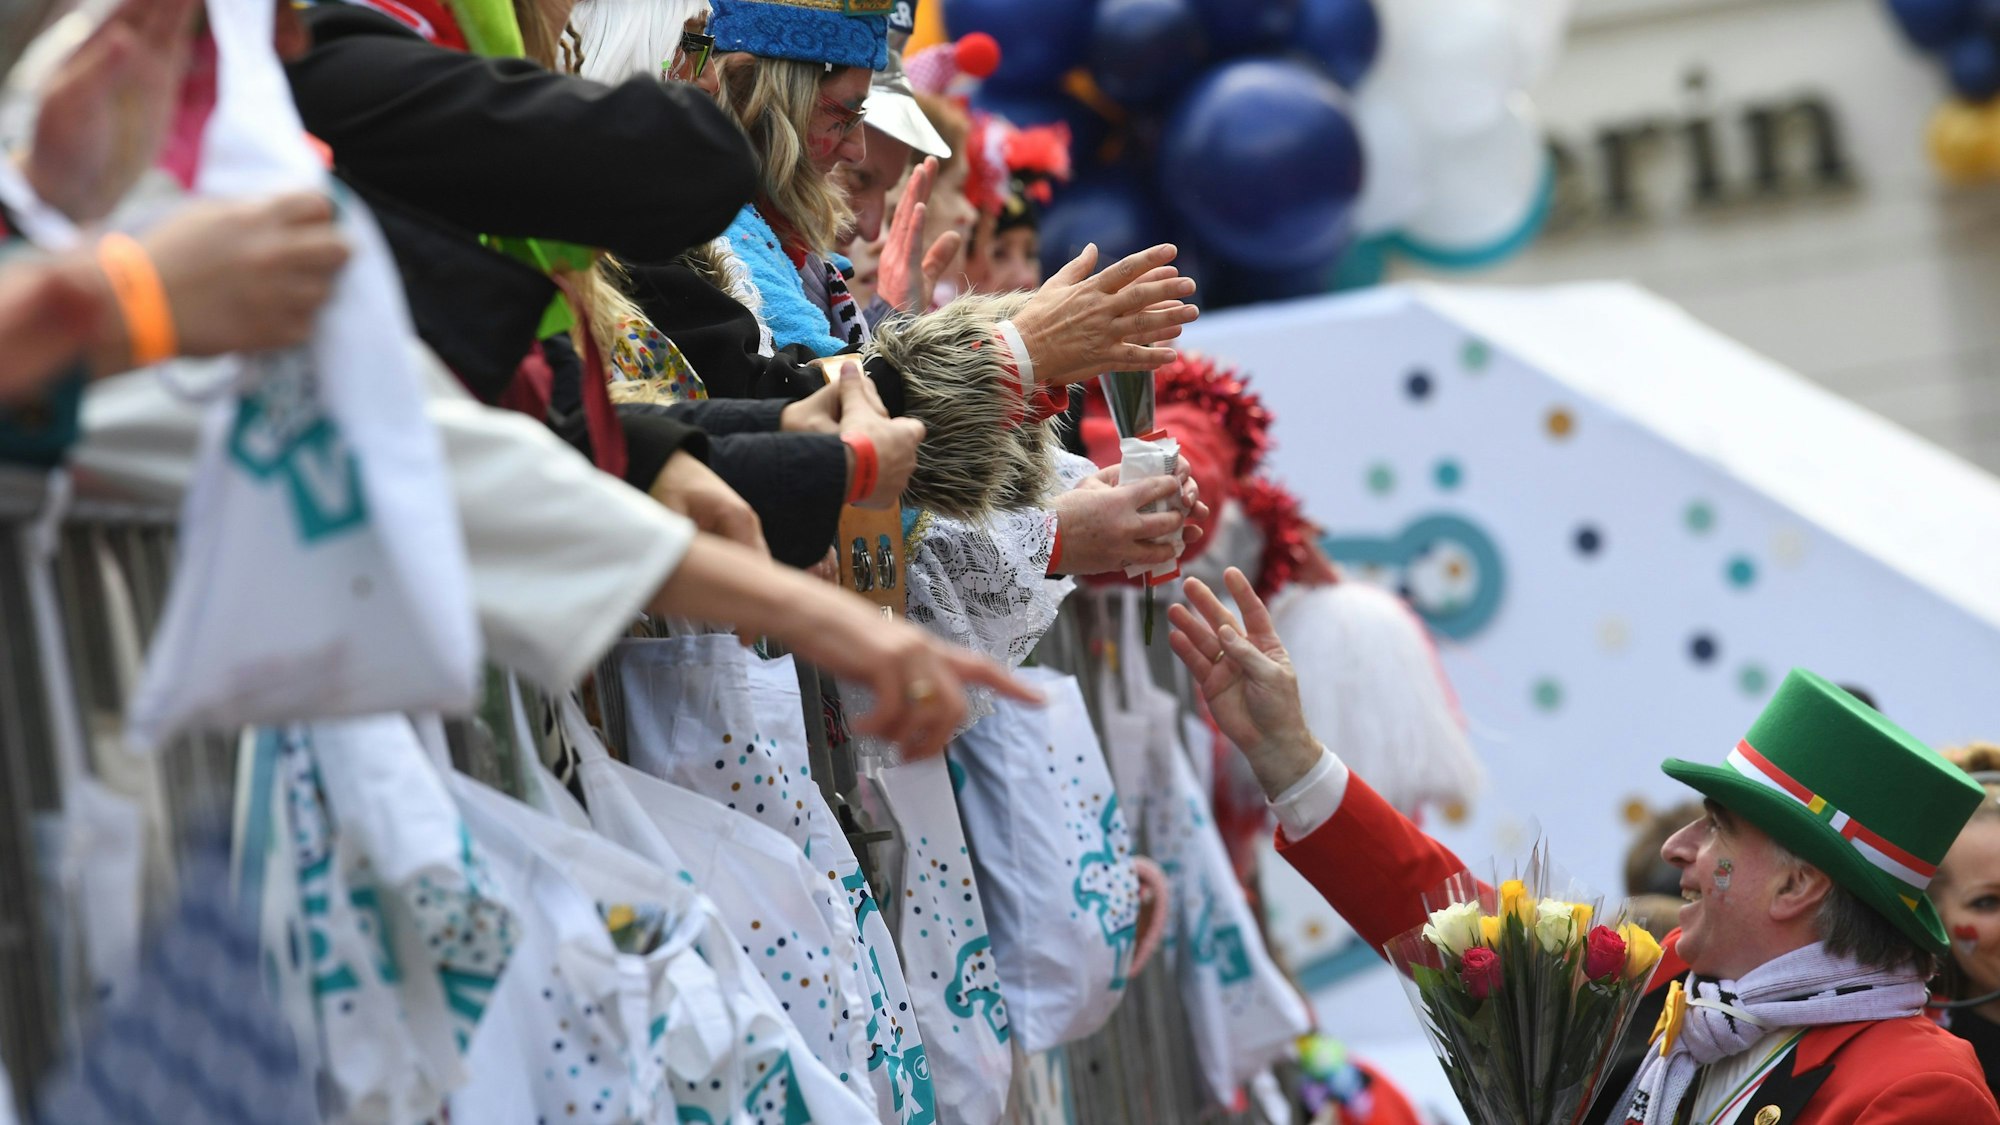 Karnevalisten auf dem Wagen verteilen Kamelle und Blumensträuße (Strüßjer) beim Rosenmontagszug.